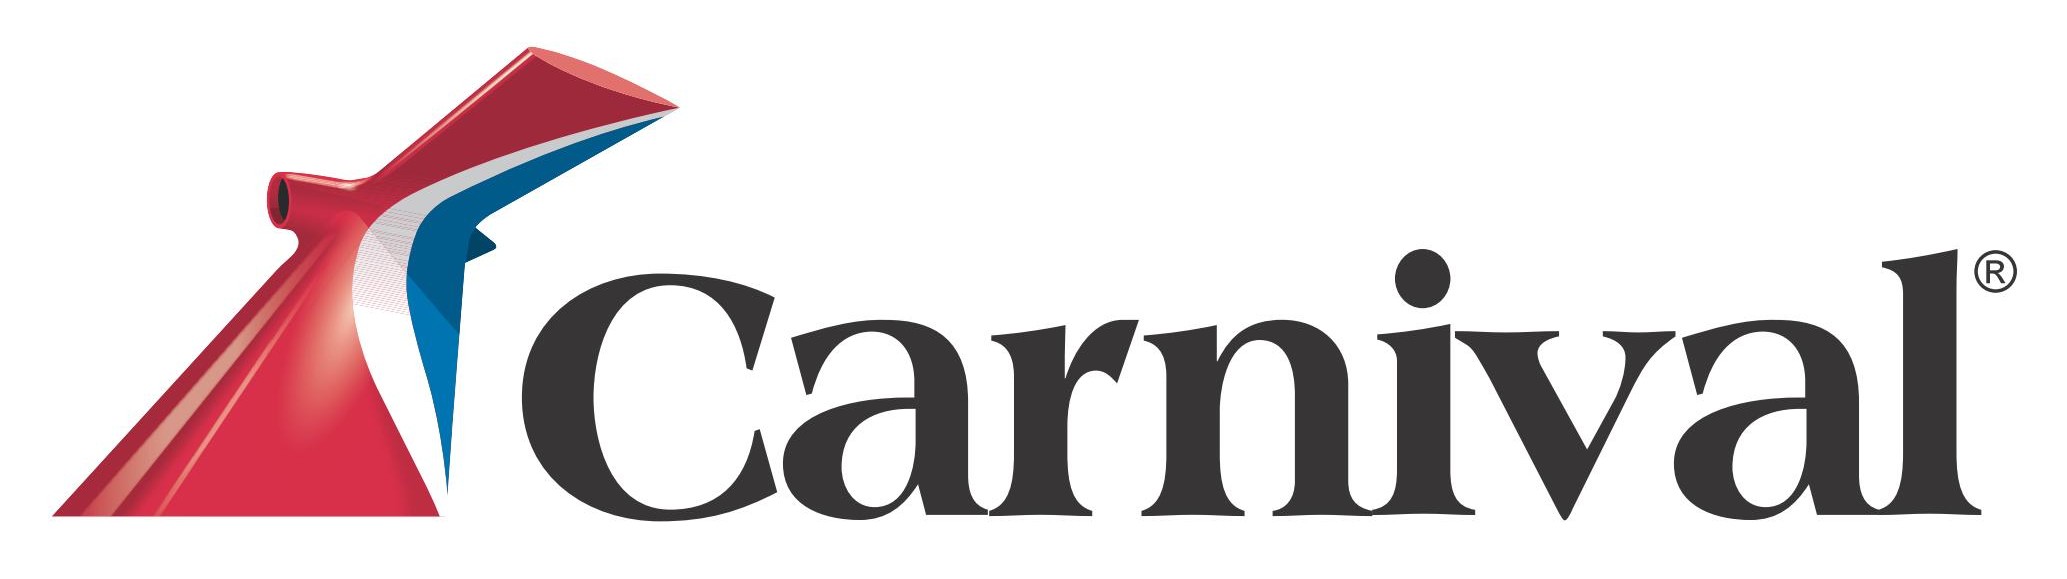 carnival-cruise-line-logo.jpg